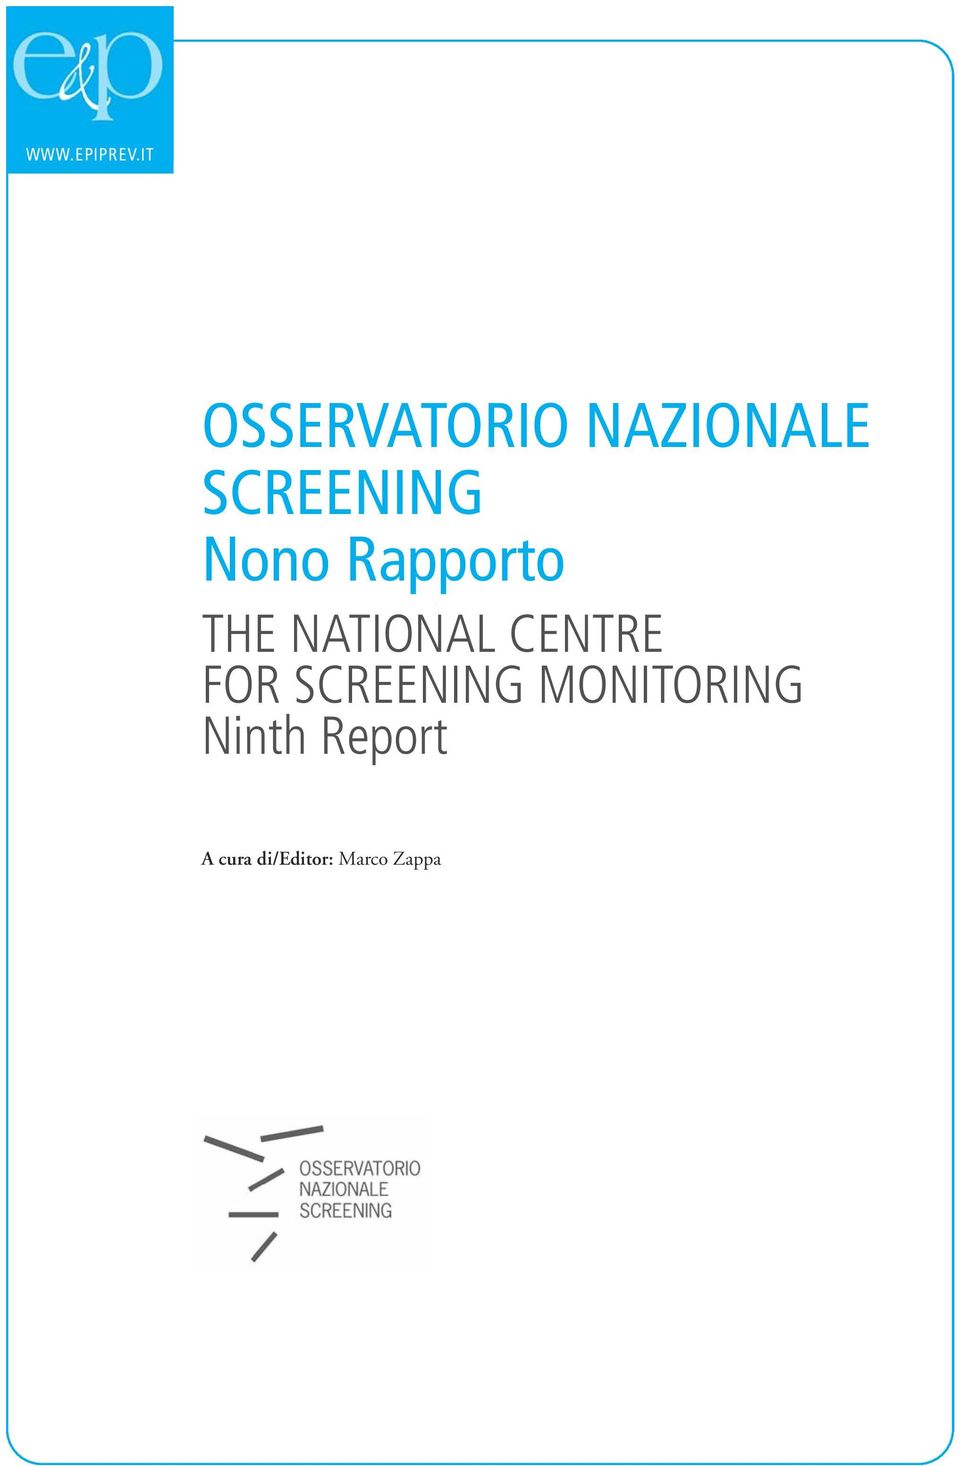 Nono Rapporto THE NATIONAL CENTRE FOR